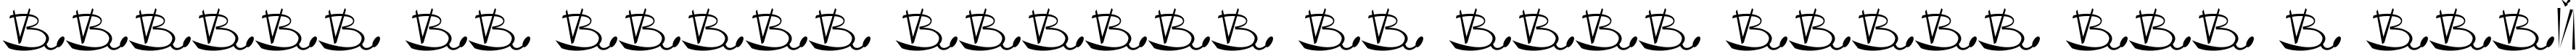 Пример написания шрифтом VLADOVSKIY текста на французском